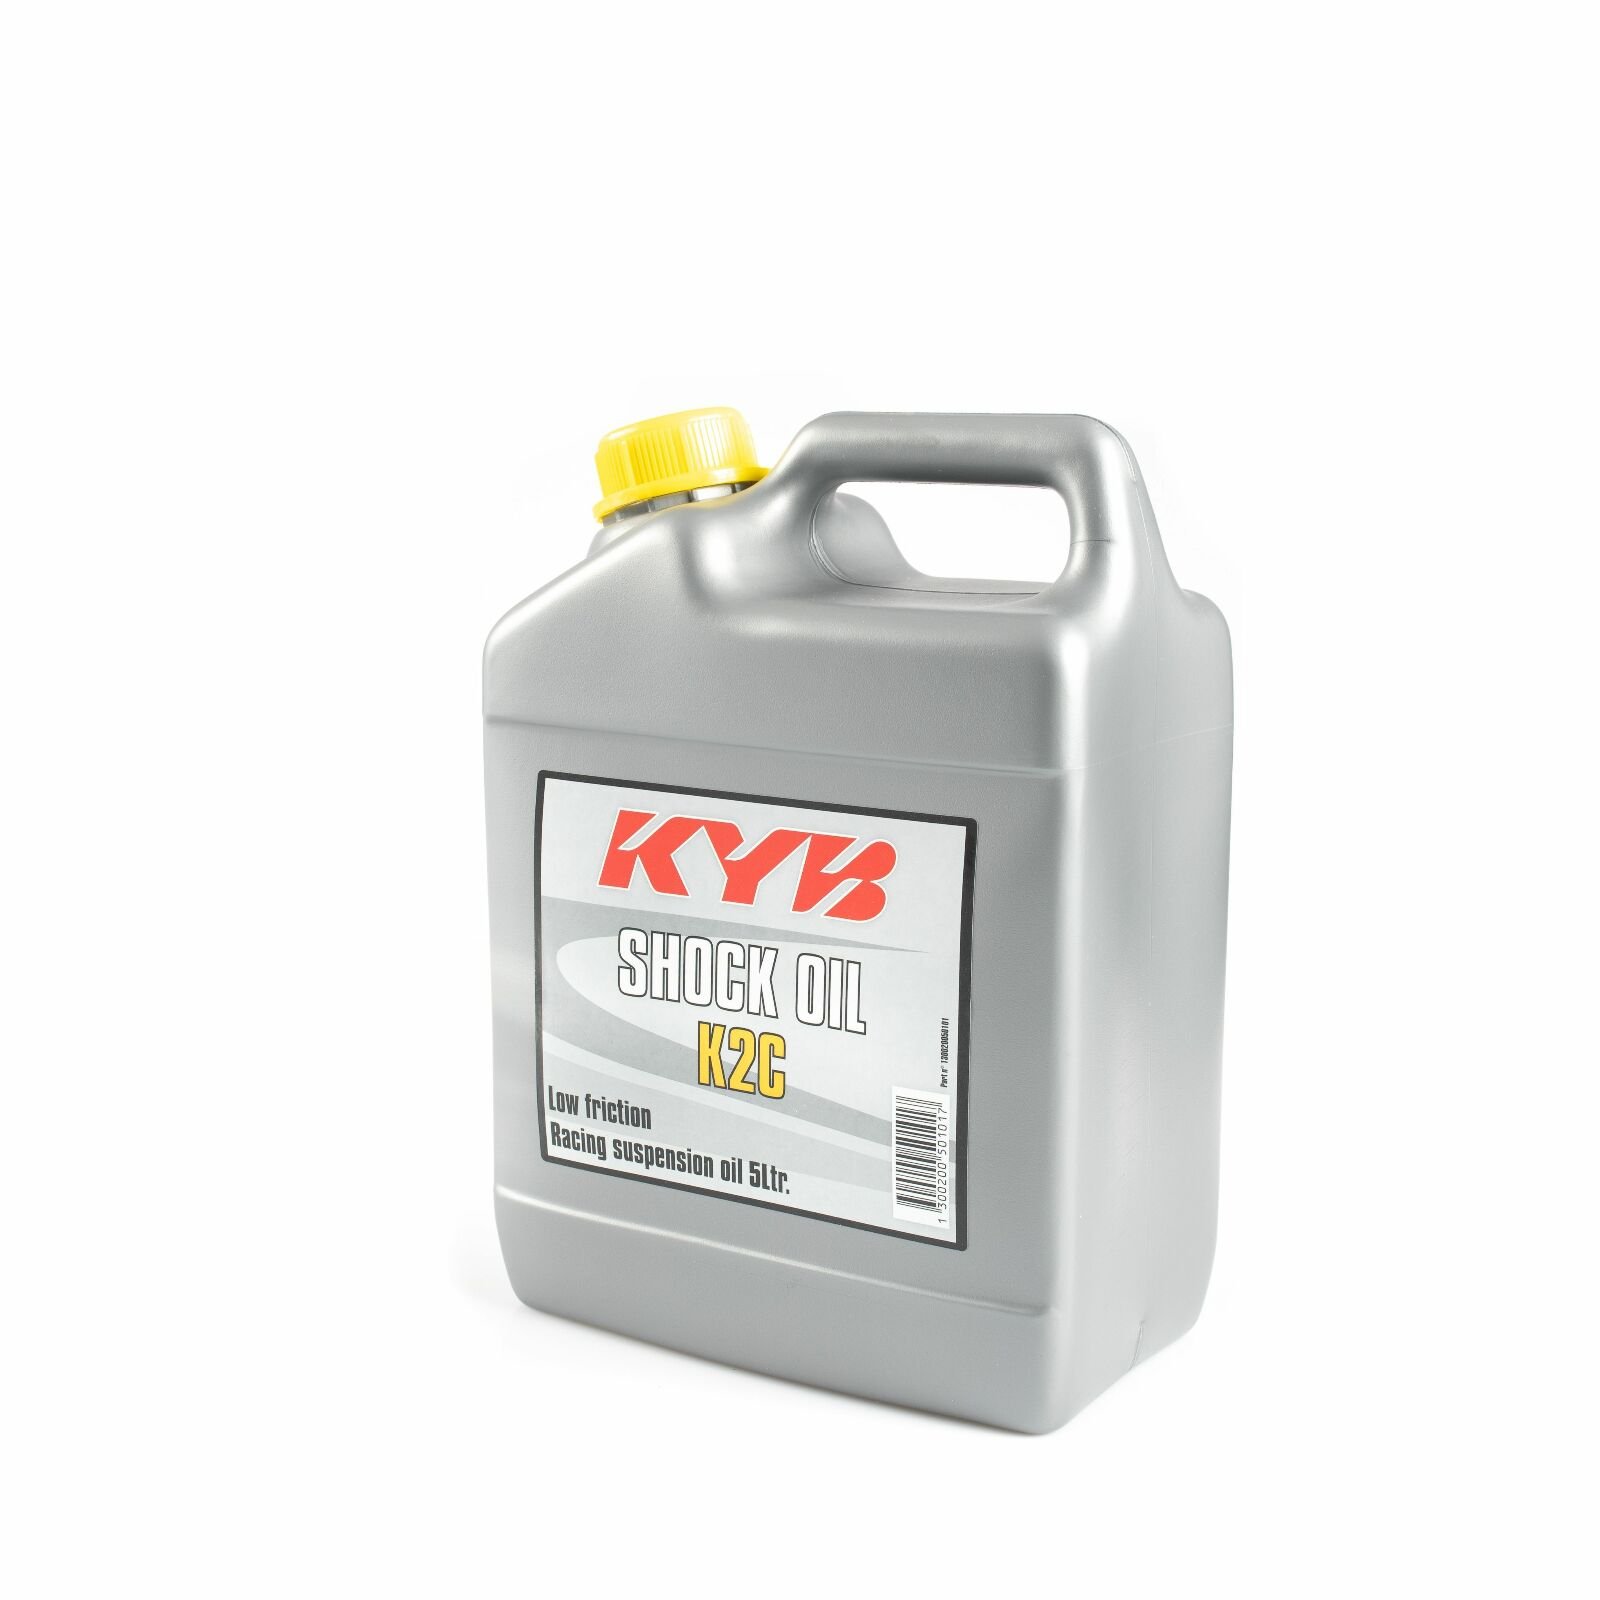 Obrázek produktu Tlumičový olej KYB 130020050101 K2C 5L 130020050101